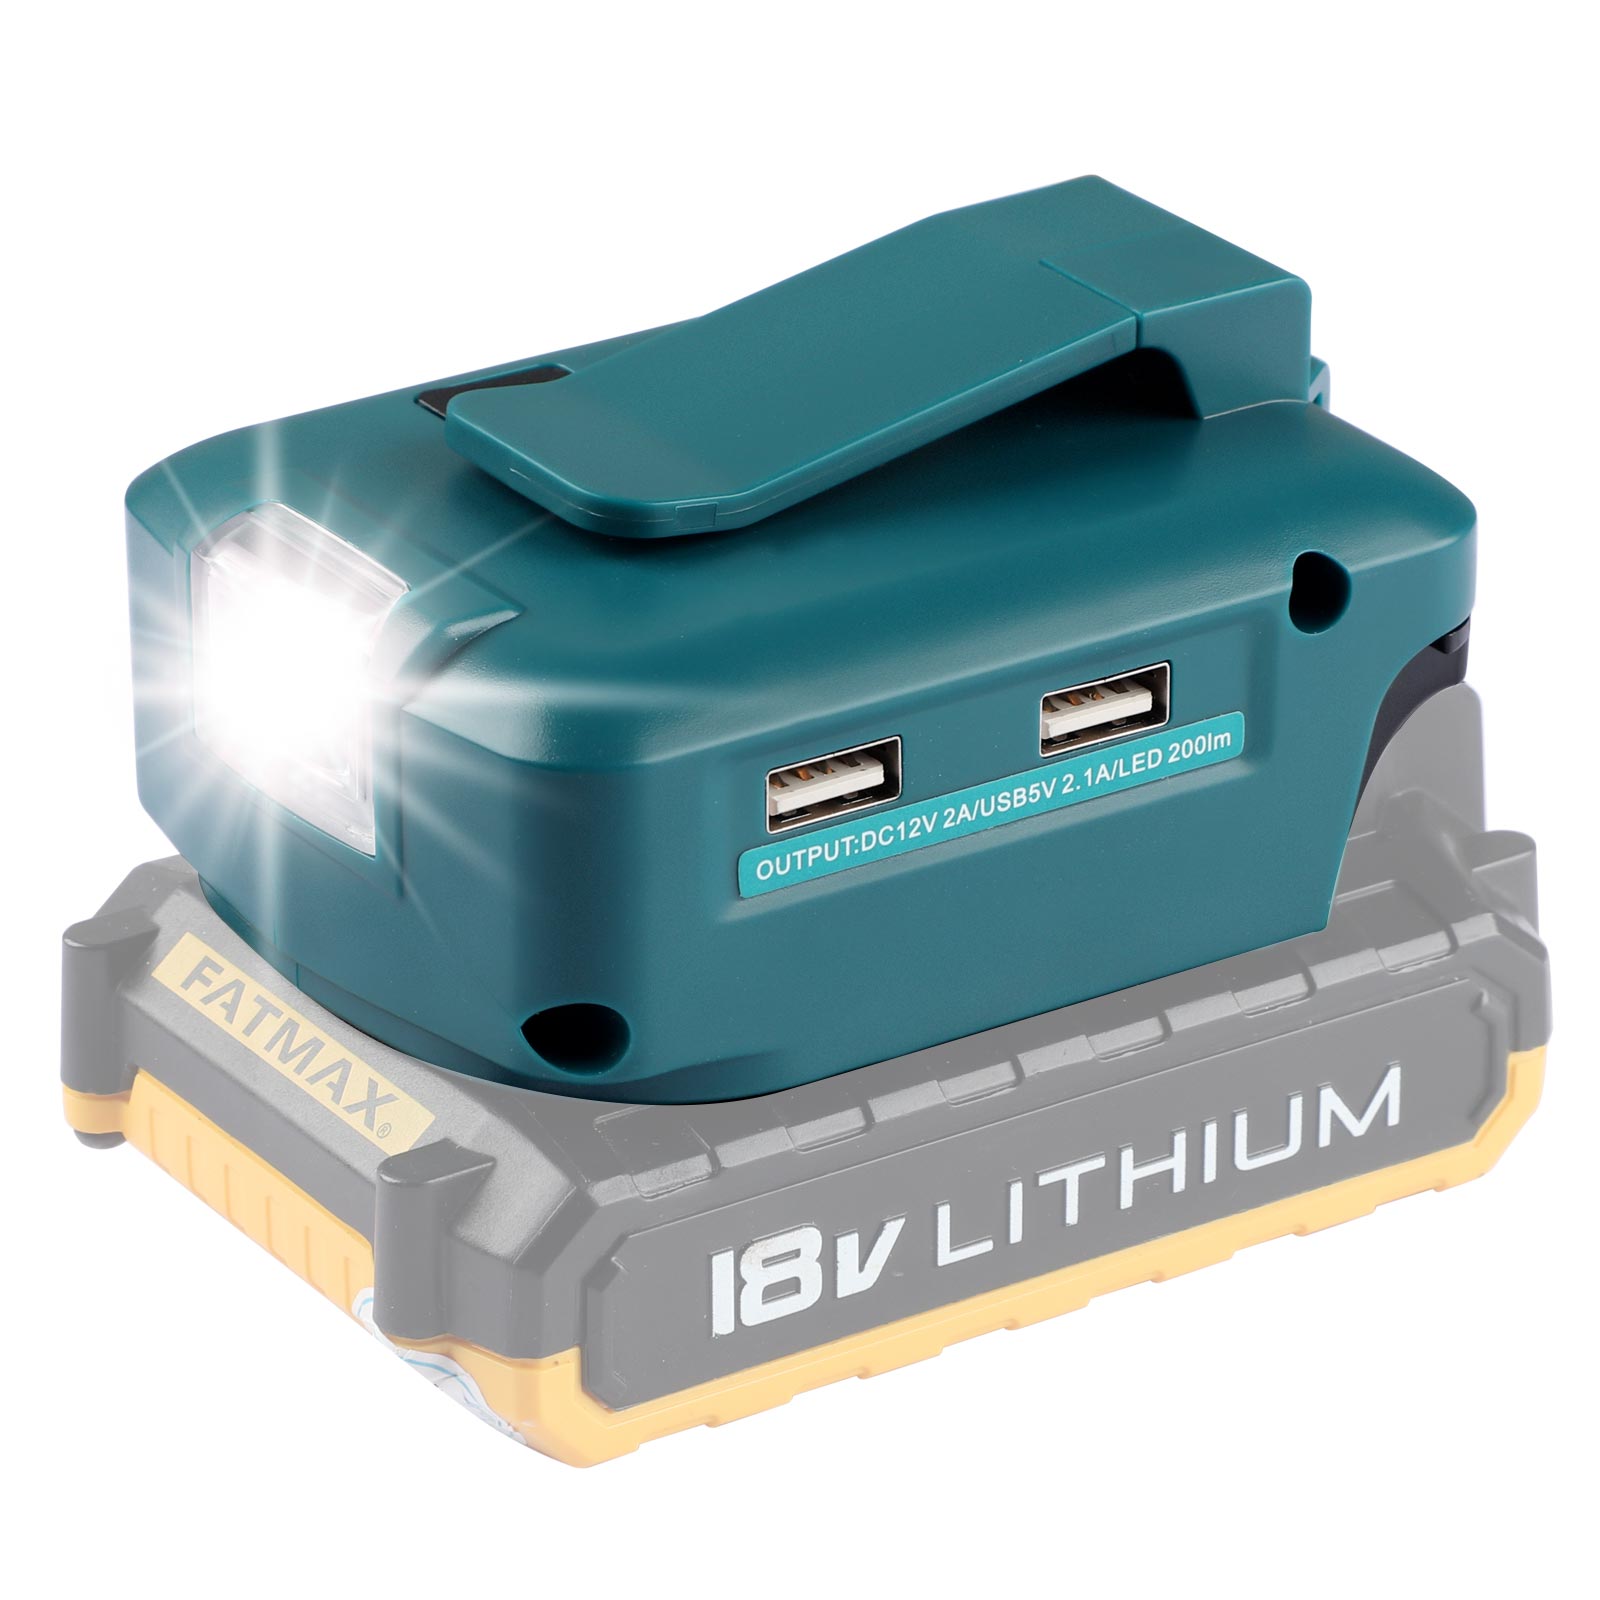 Adaptor Batré Urun Lampu LED sareng Port DC & 2 Port USB pikeun Sumber Daya Batre Litium Hideung&Decker 14.4-18V